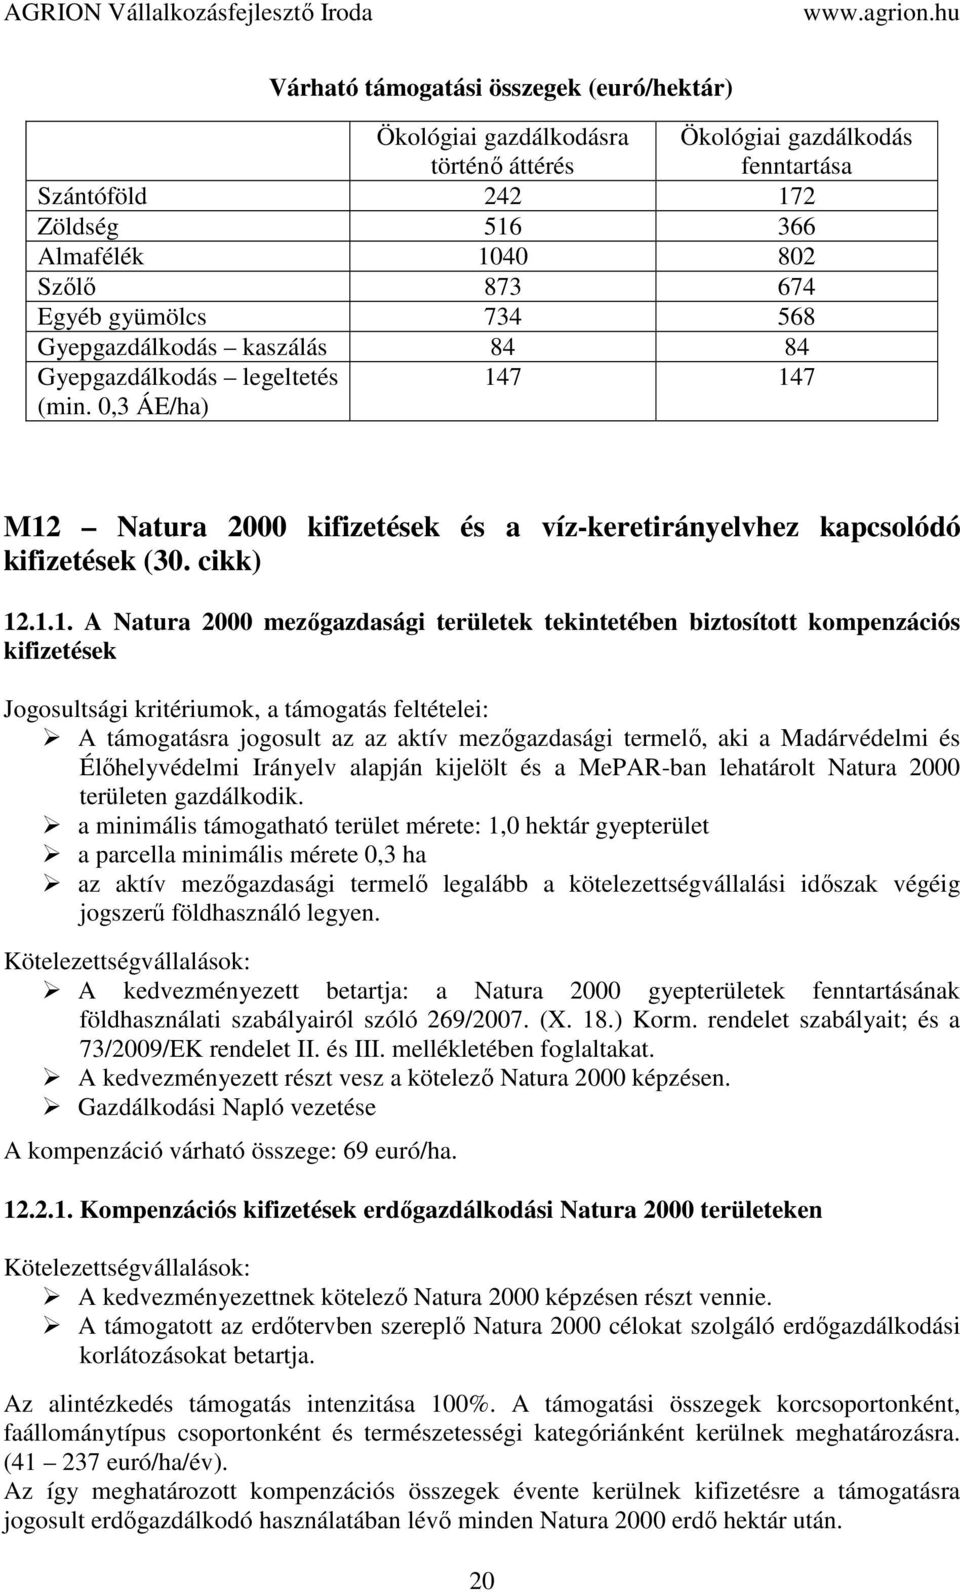 7 147 M12 Natura 2000 kifizetések és a víz-keretirányelvhez kapcsolódó kifizetések (30. cikk) 12.1.1. A Natura 2000 mezőgazdasági területek tekintetében biztosított kompenzációs kifizetések